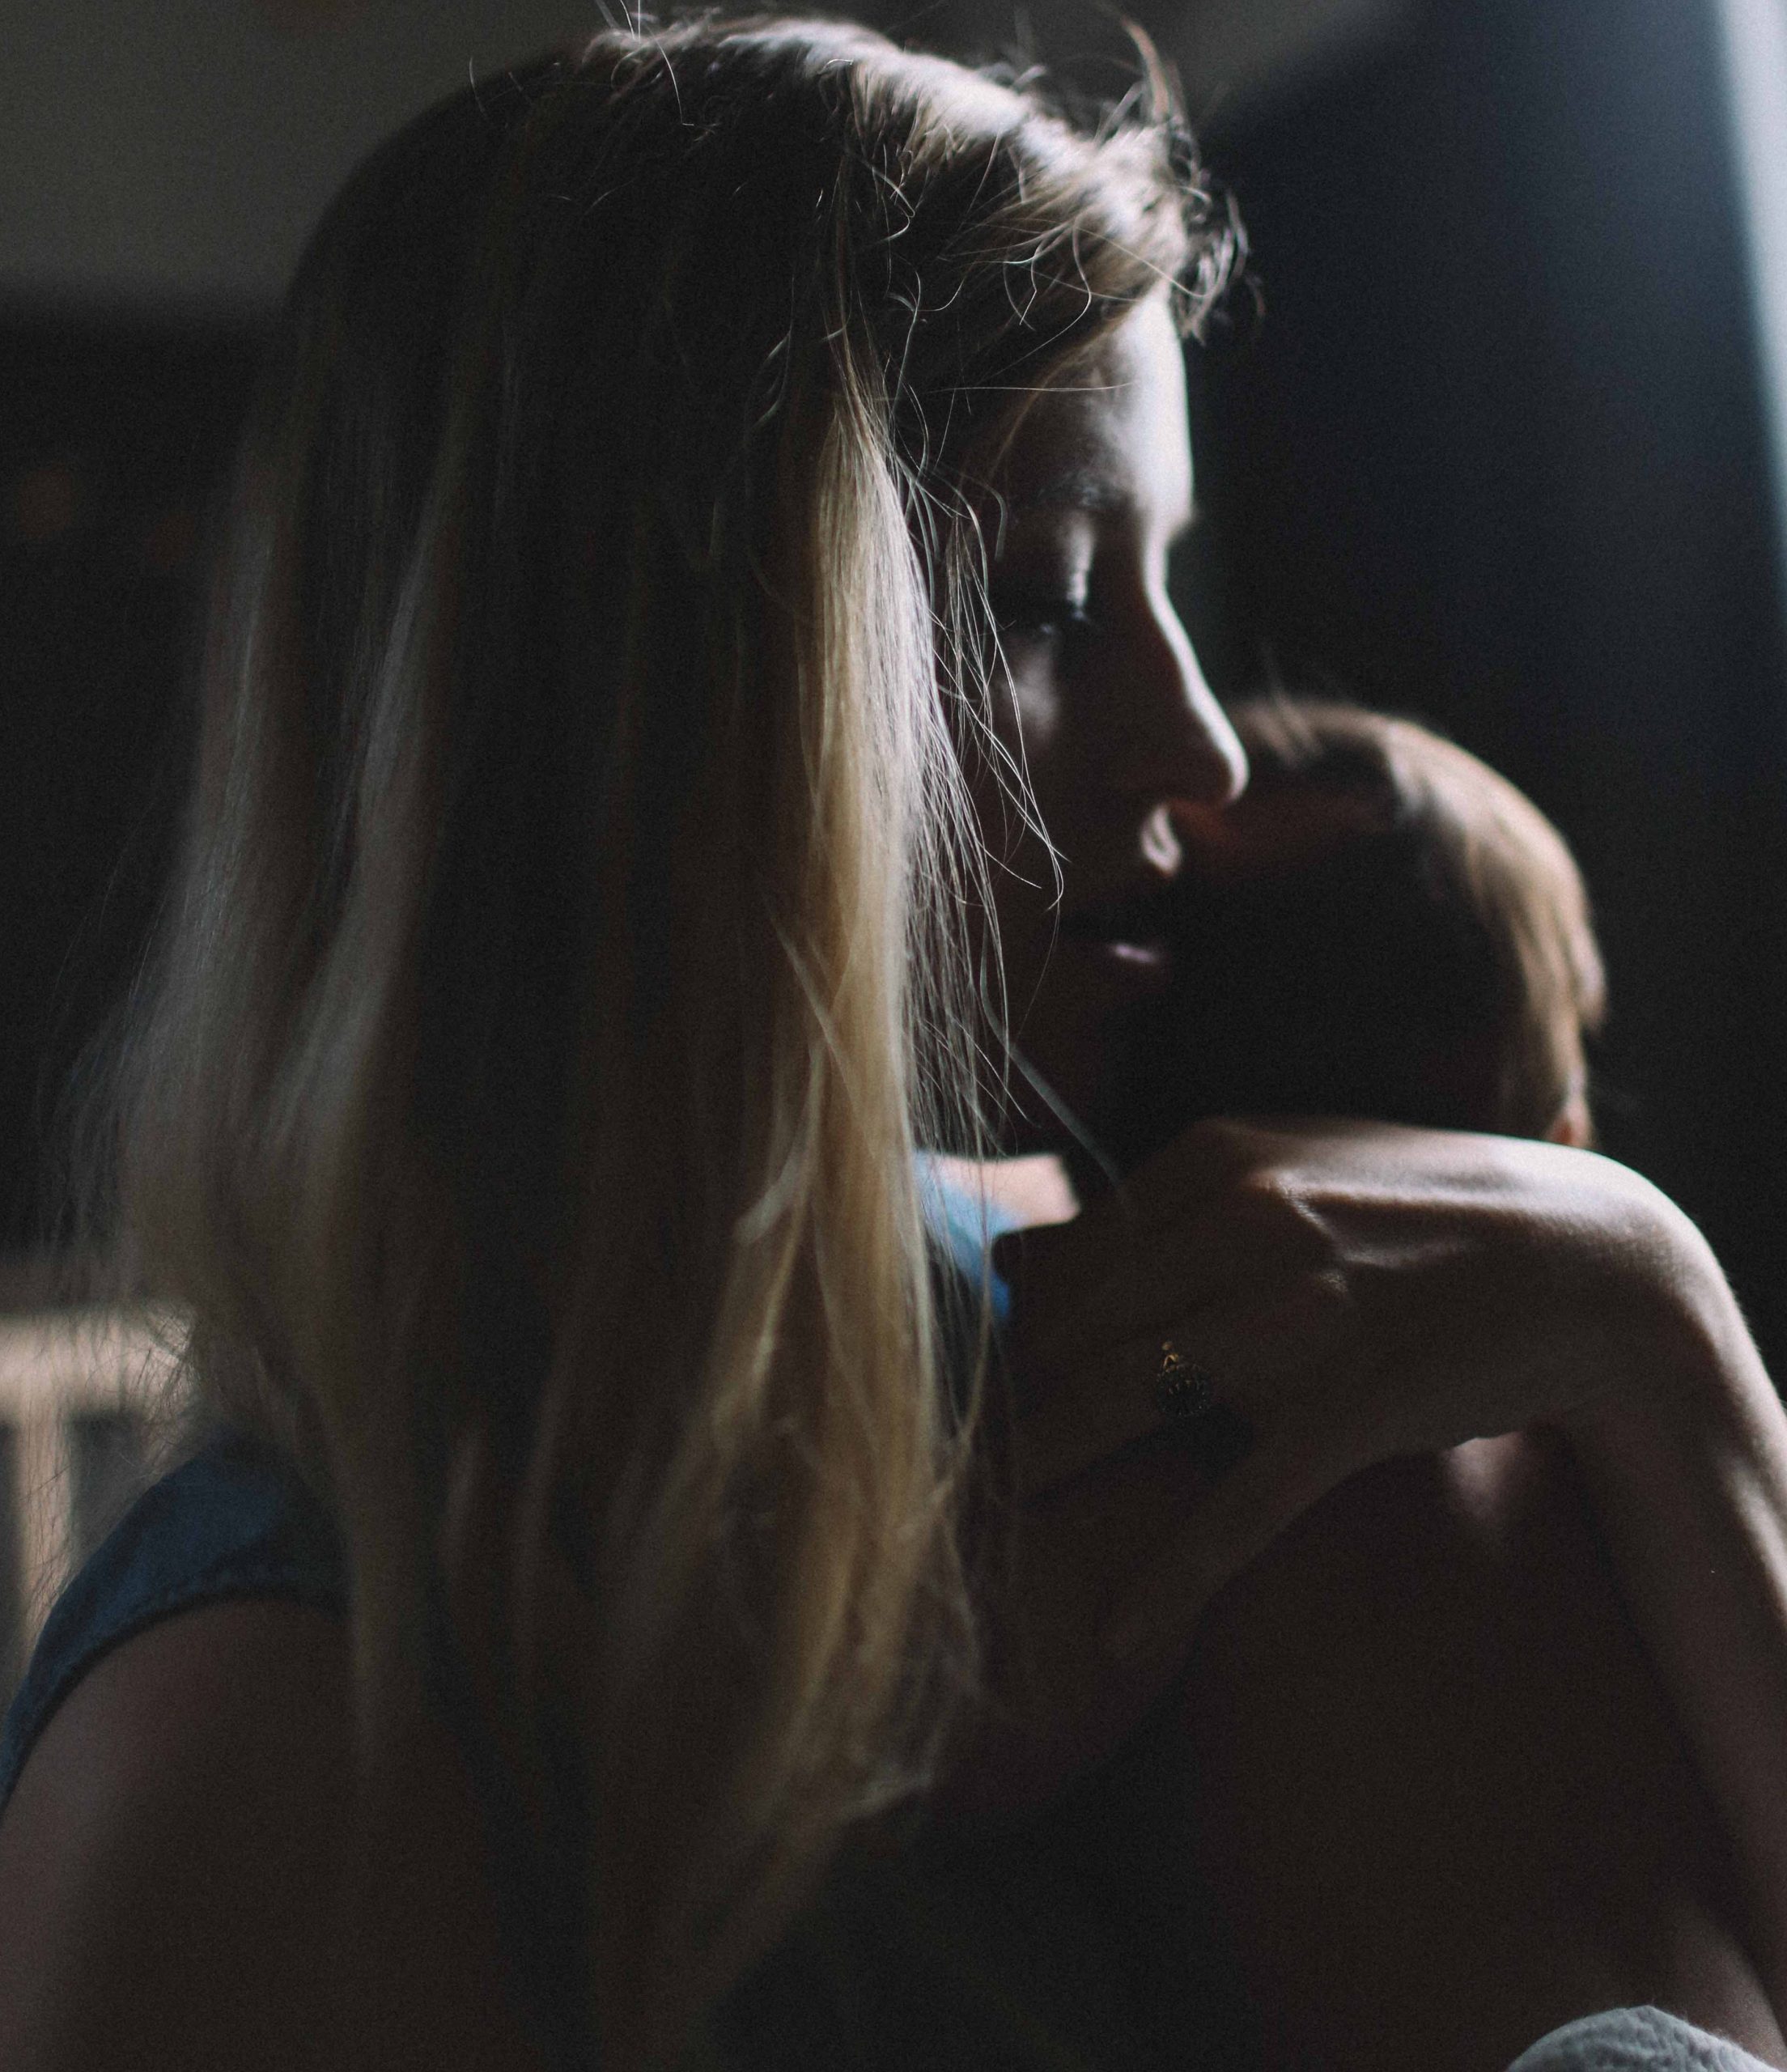 אובססיה אימהית לאחר לידה – הנורמה או הפרעה פסיכיאטרית?